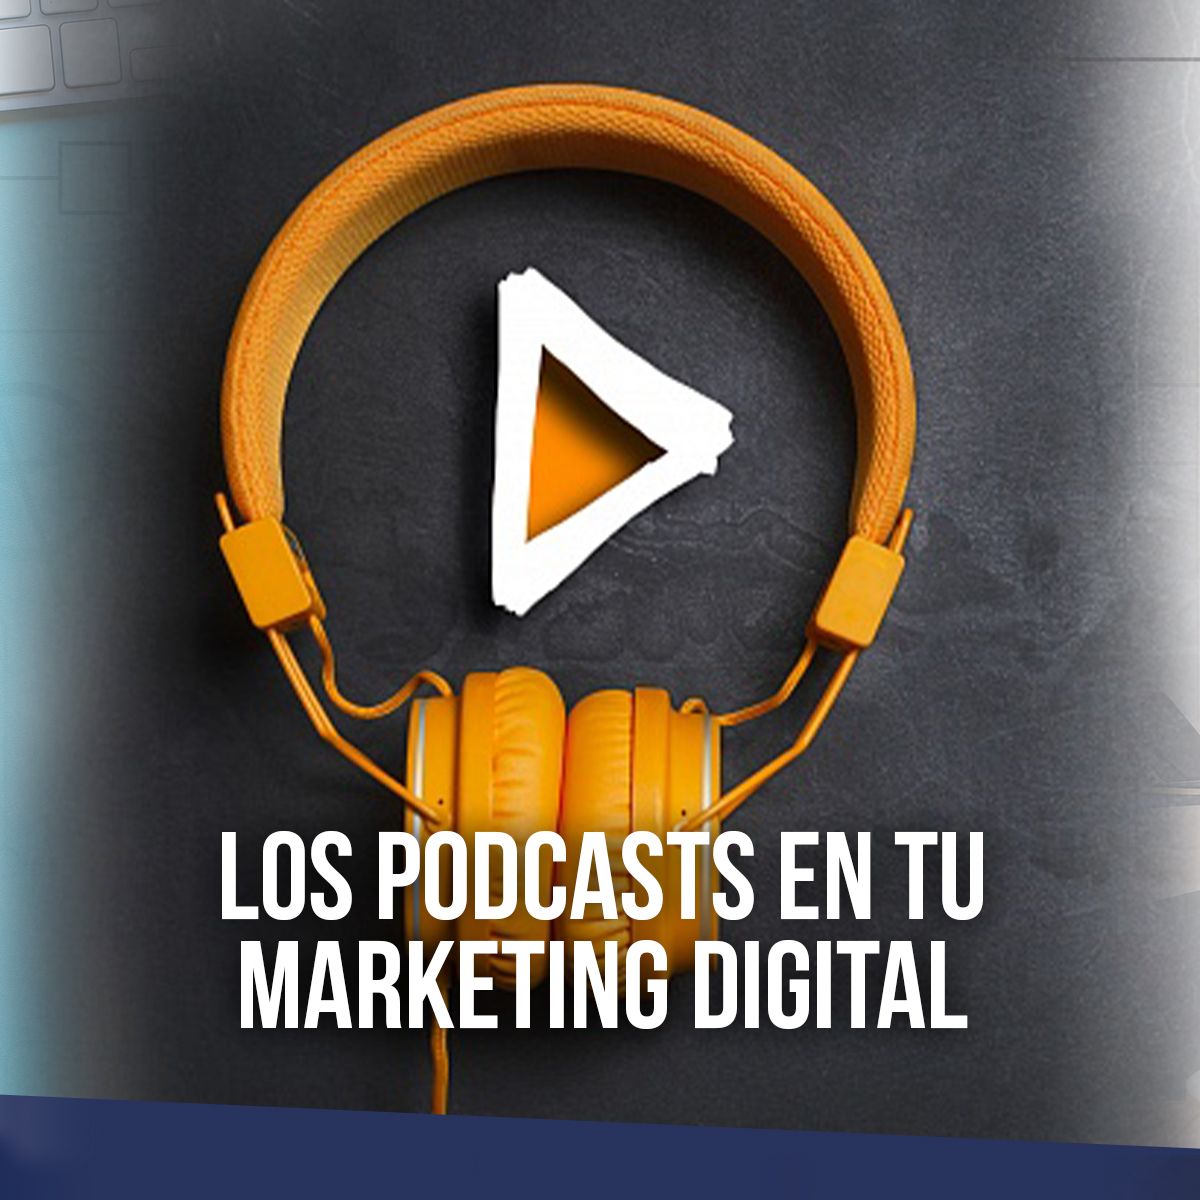 Los podcasts en tu marketing digital